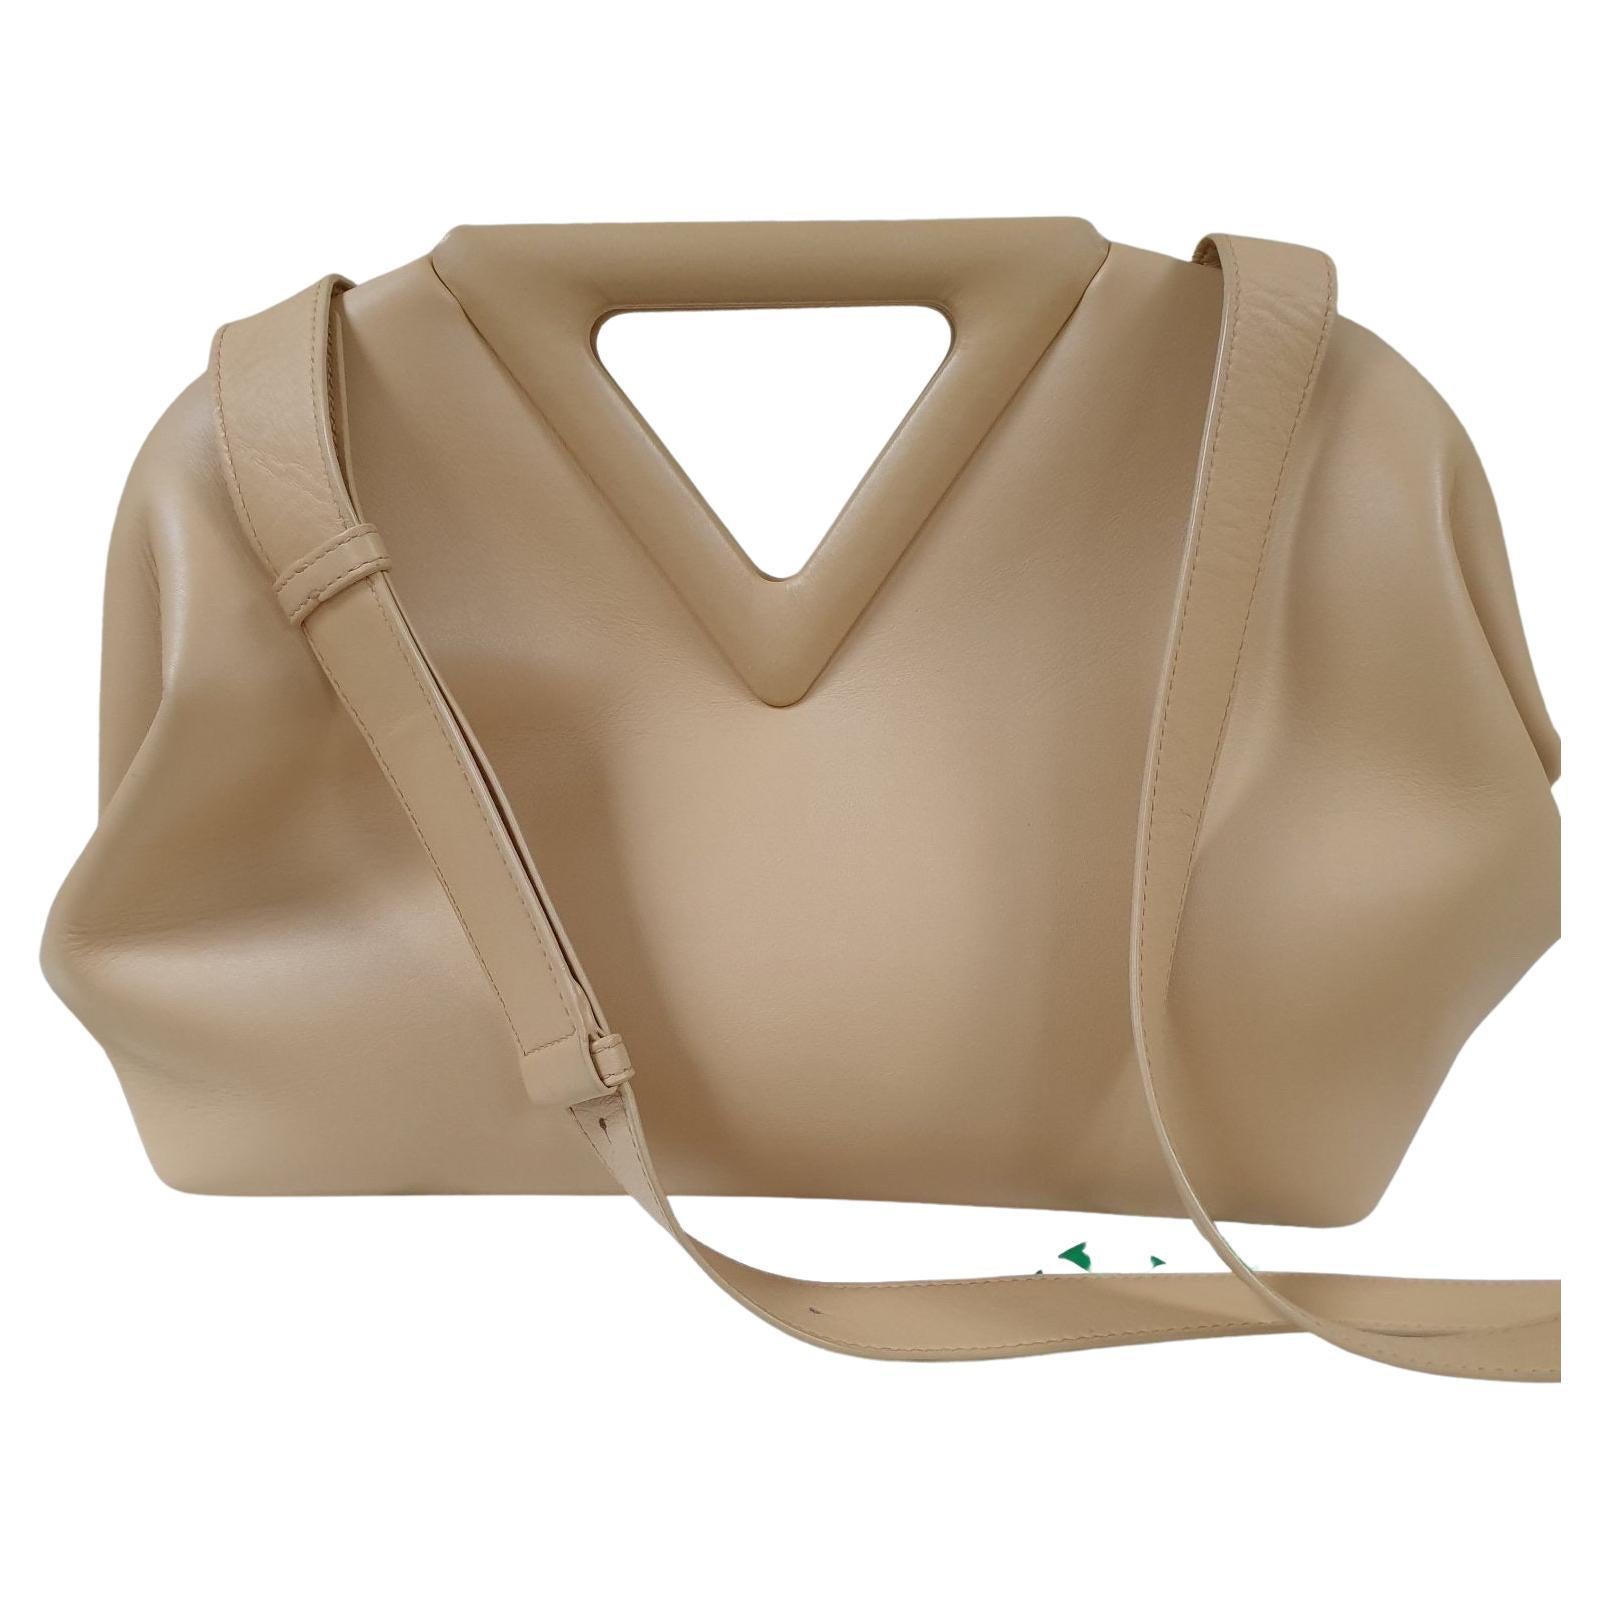 Bottega Veneta Point Medium Quilted Top-Handle Bag